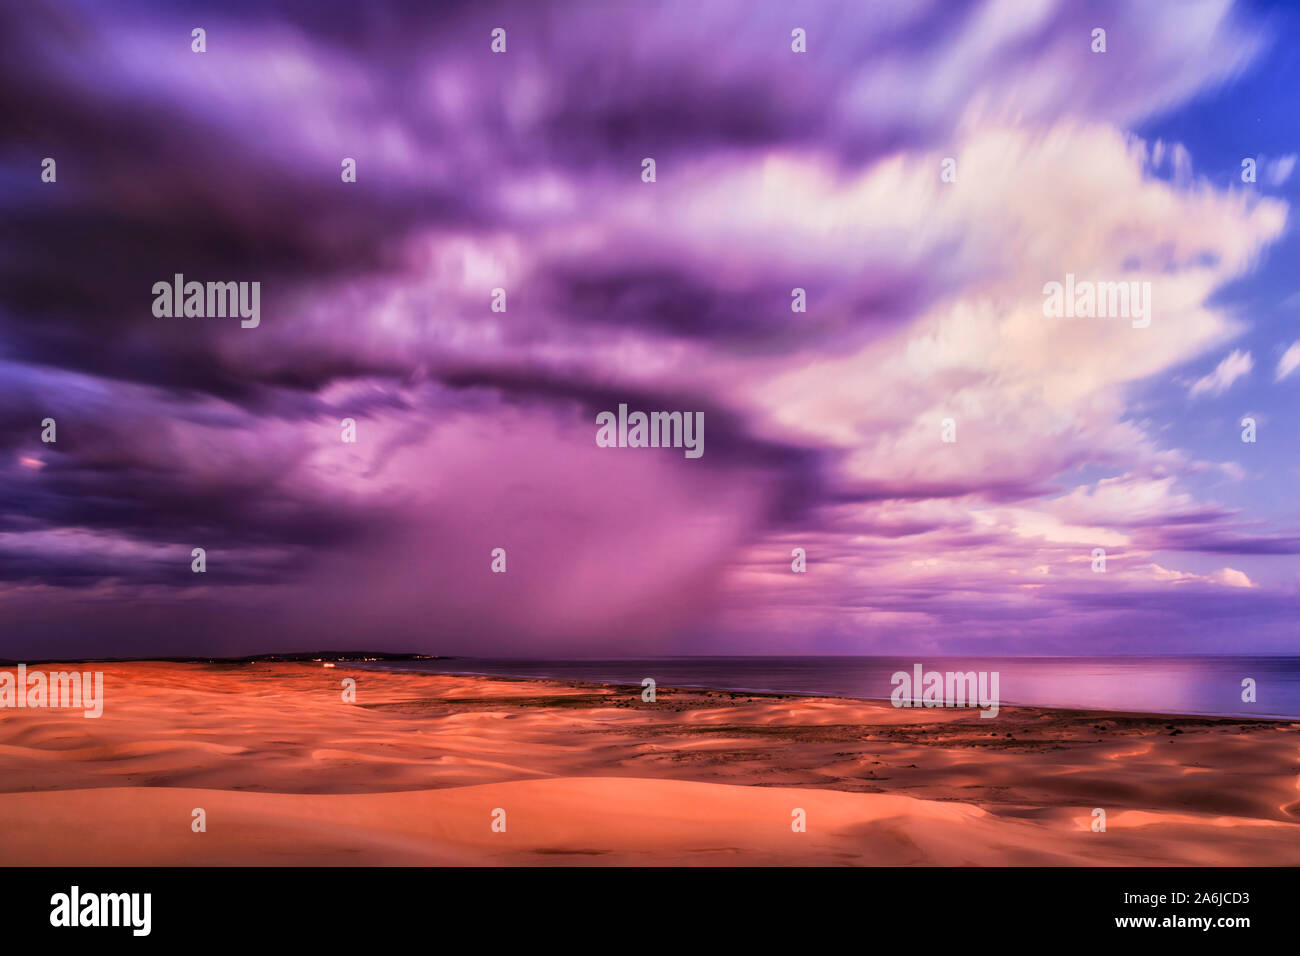 Alto cielo con nubes borrosa al atardecer reflejándose el último día de la luz sobre el océano Pacífico y las dunas de arena de Stockton Beach en Australia - colorido seascape Foto de stock